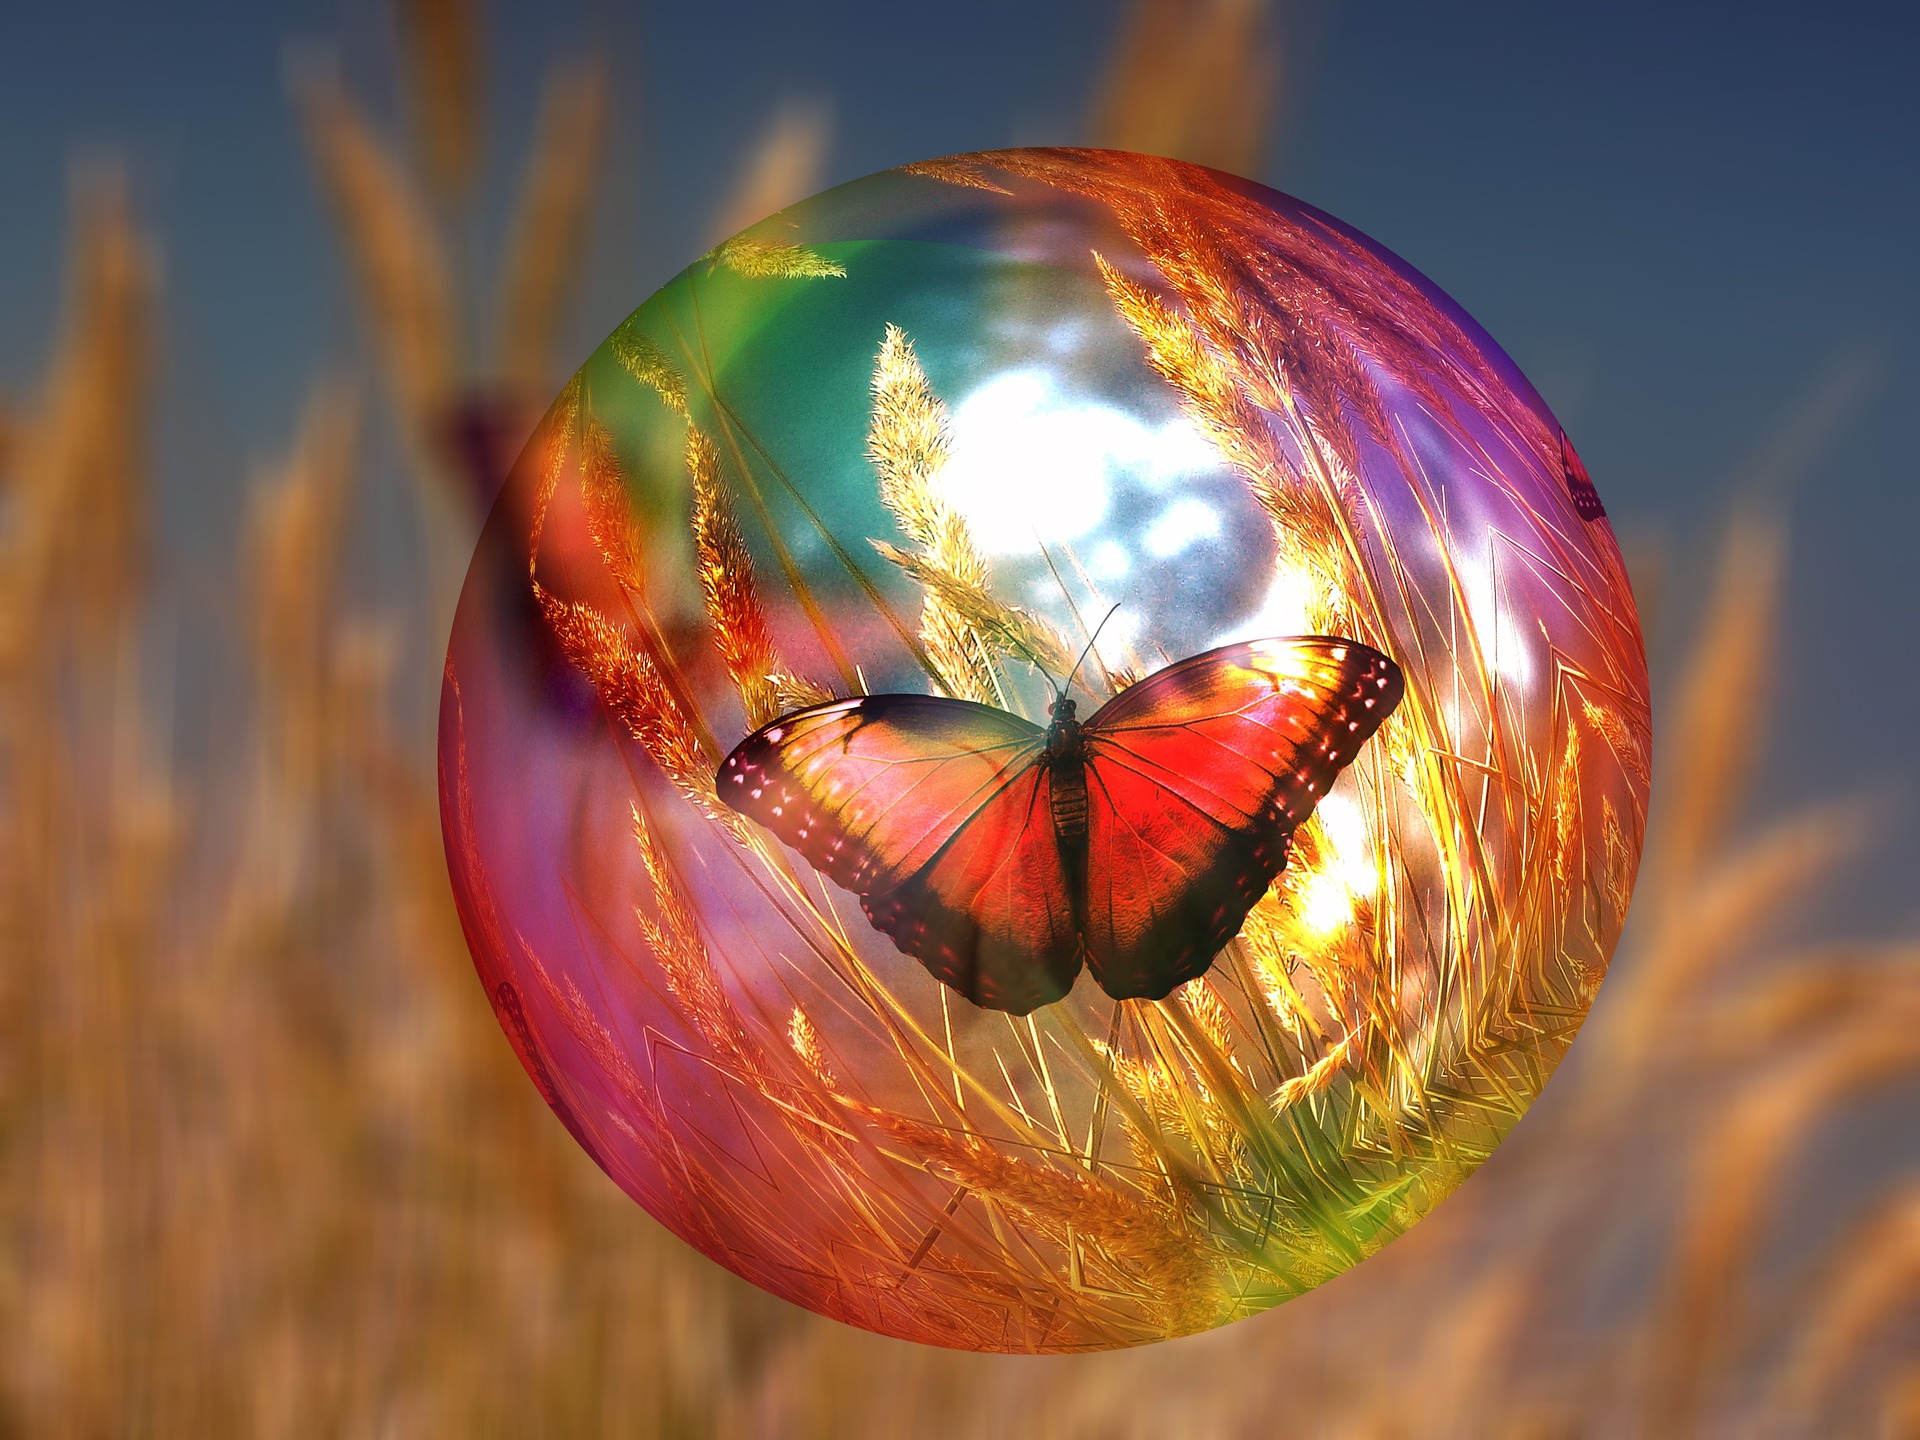 papillon dans une bulle de savon